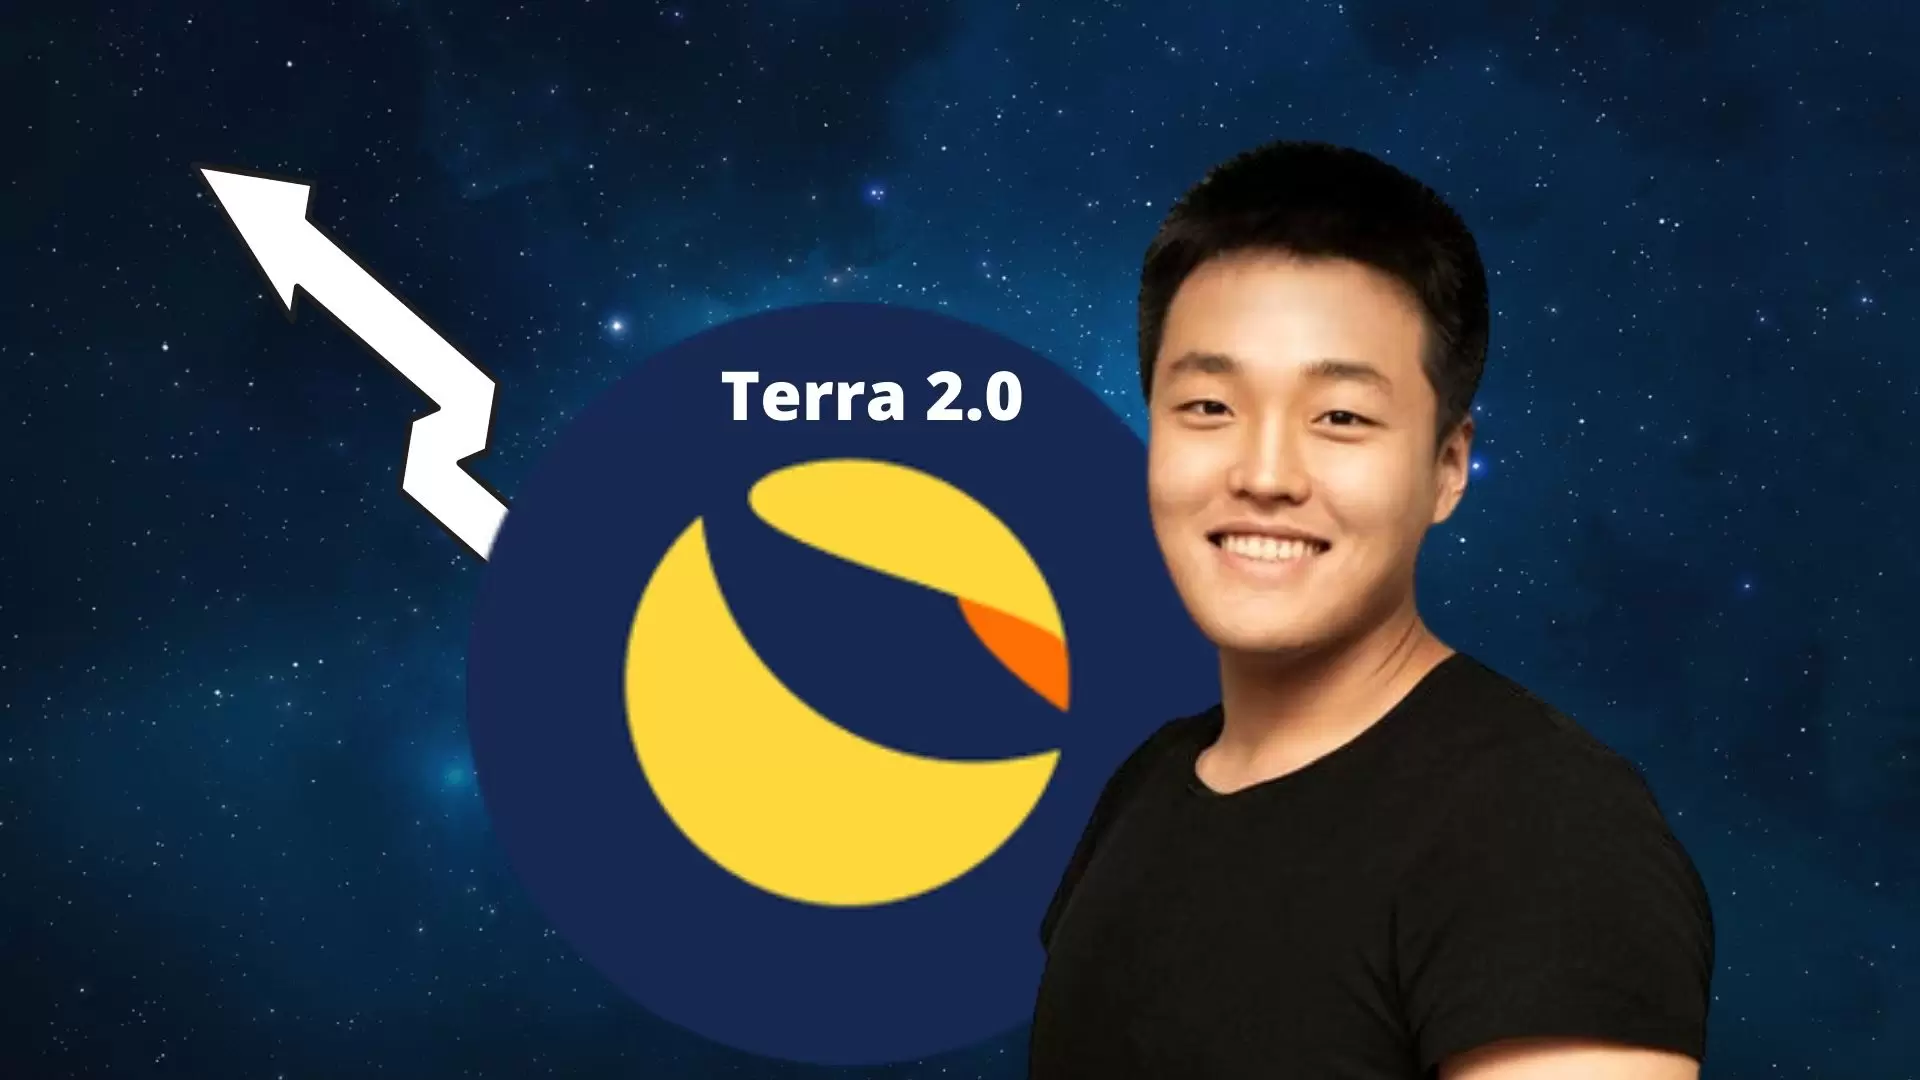 Amerikalı Ünlü Aktör, Terra’nın Yeni Blockchain’i Terra 2.0 Hakkındaki Görüşlerini Açıkladı!